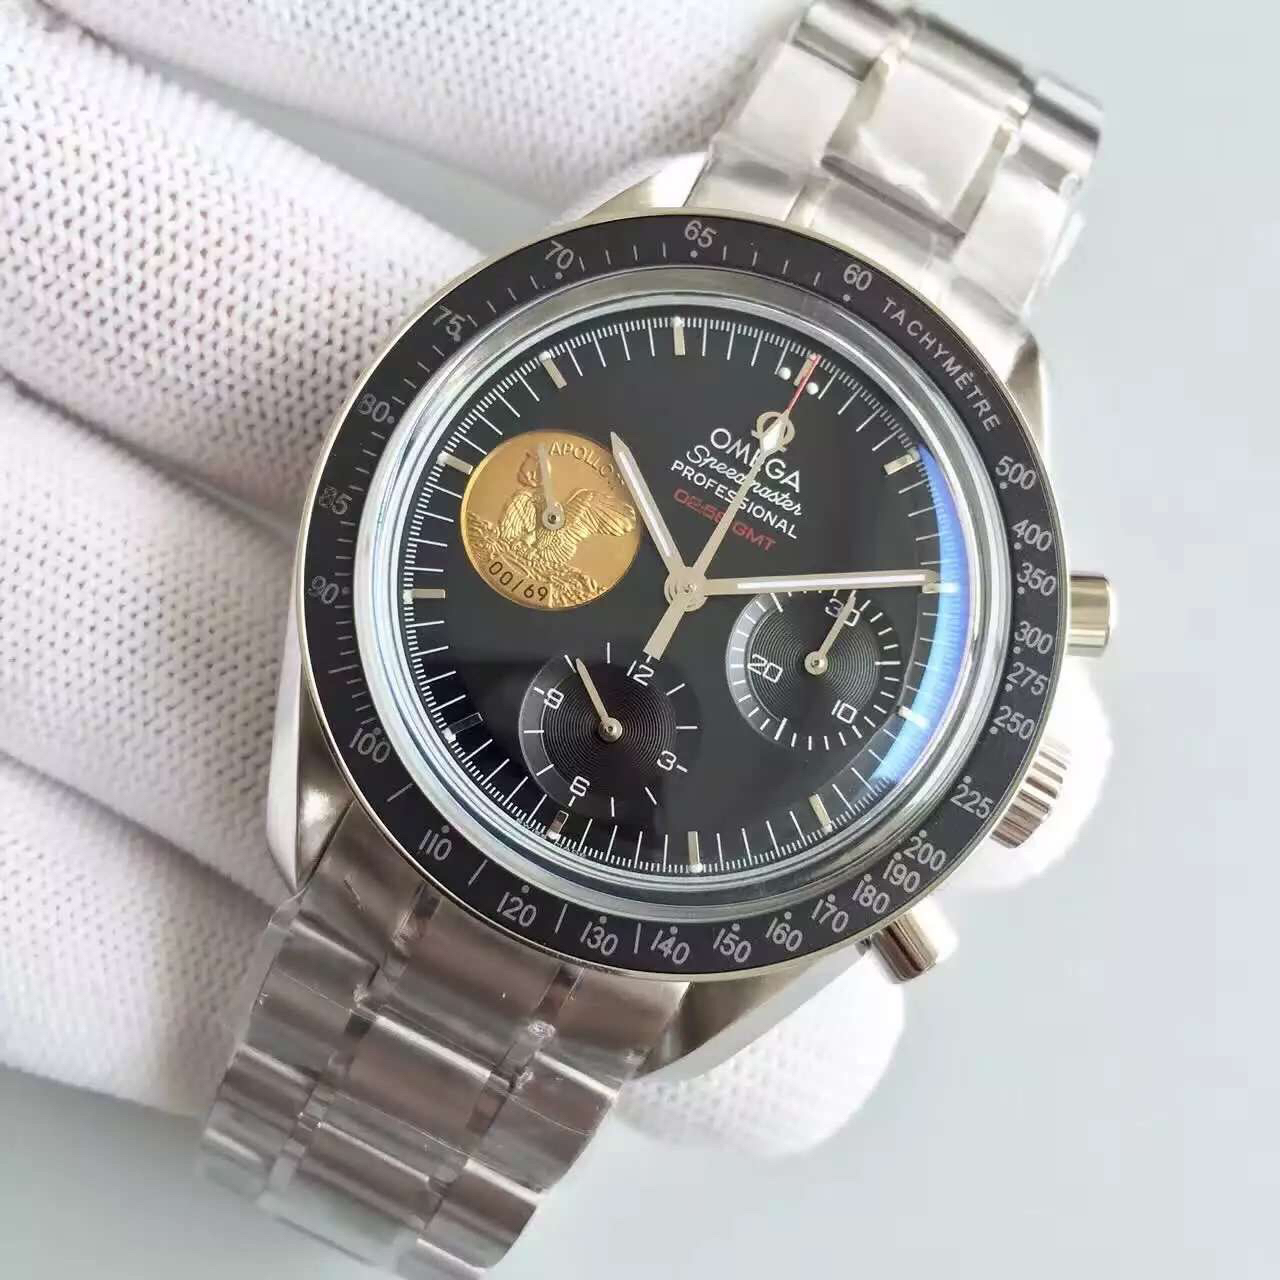 2023081206290061 - 歐米茄登月高仿手錶 JH歐米茄超霸登月限量版手動￥3880